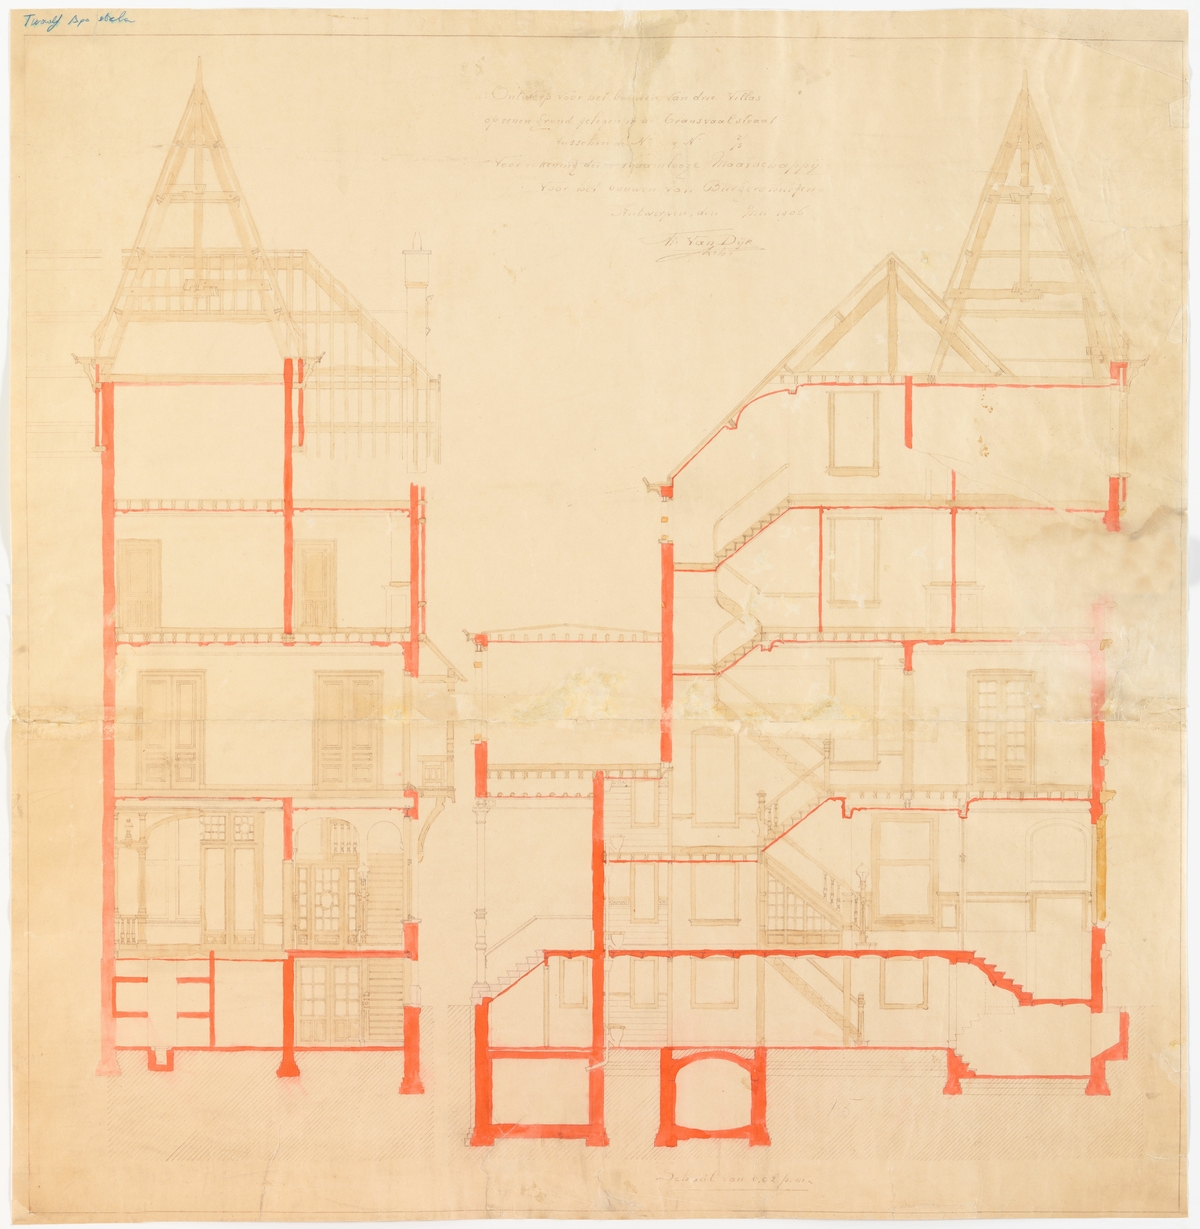 Tekening betreffende het ontwerp van een eclectisch ensemble van drie villa's genaamd 'De Twaalf Apostelen' te Zurenborg door Frans Van Dijk (Adres: Transvaalstraat 13-17)